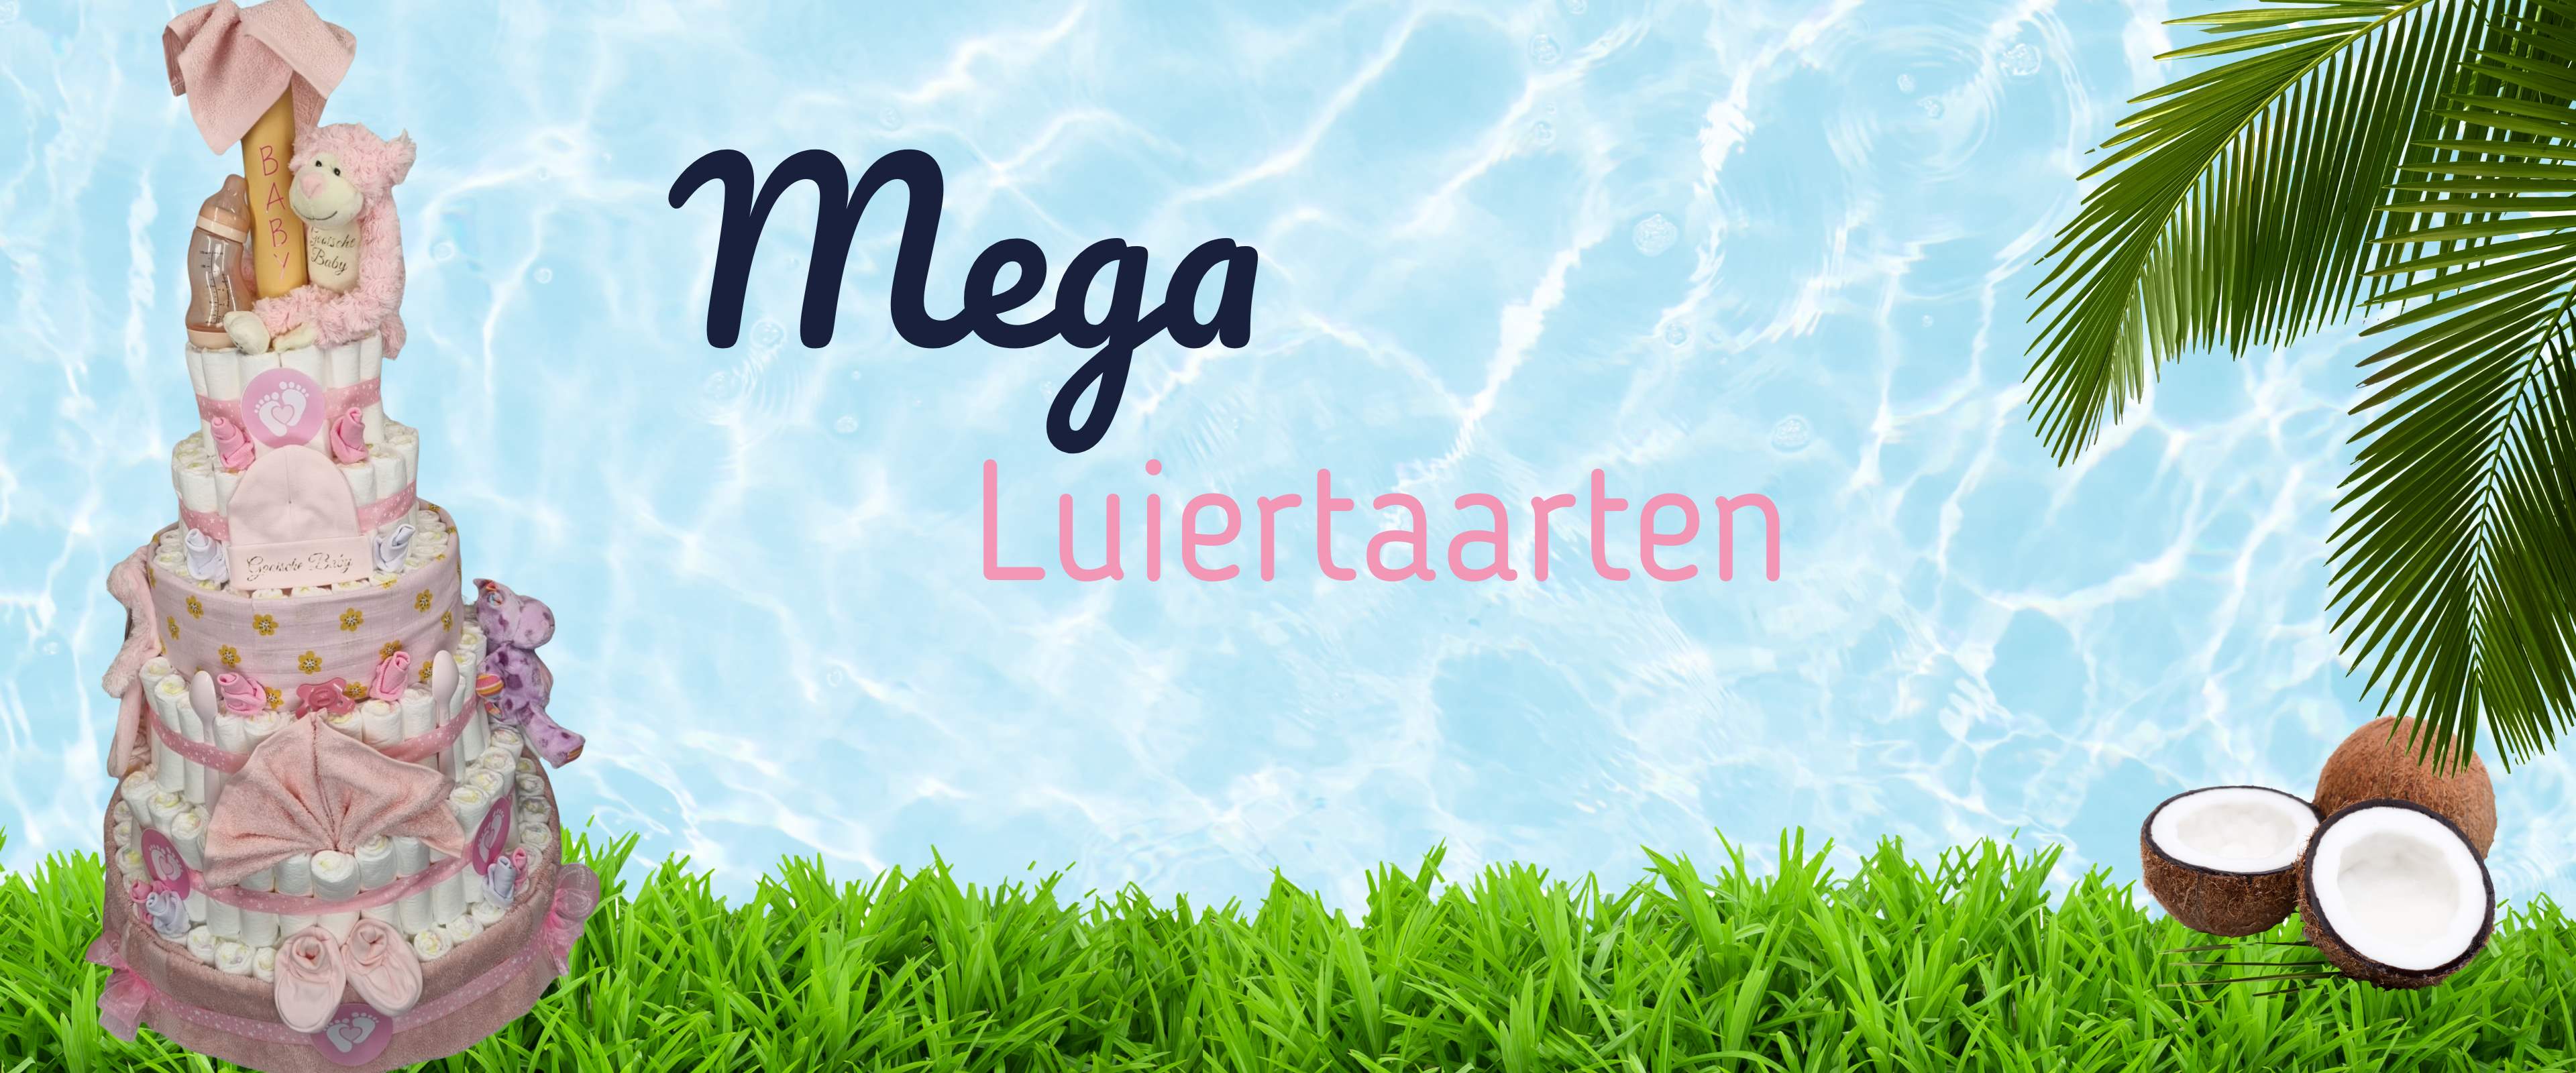 Mega Luiertaarten banner_(1)